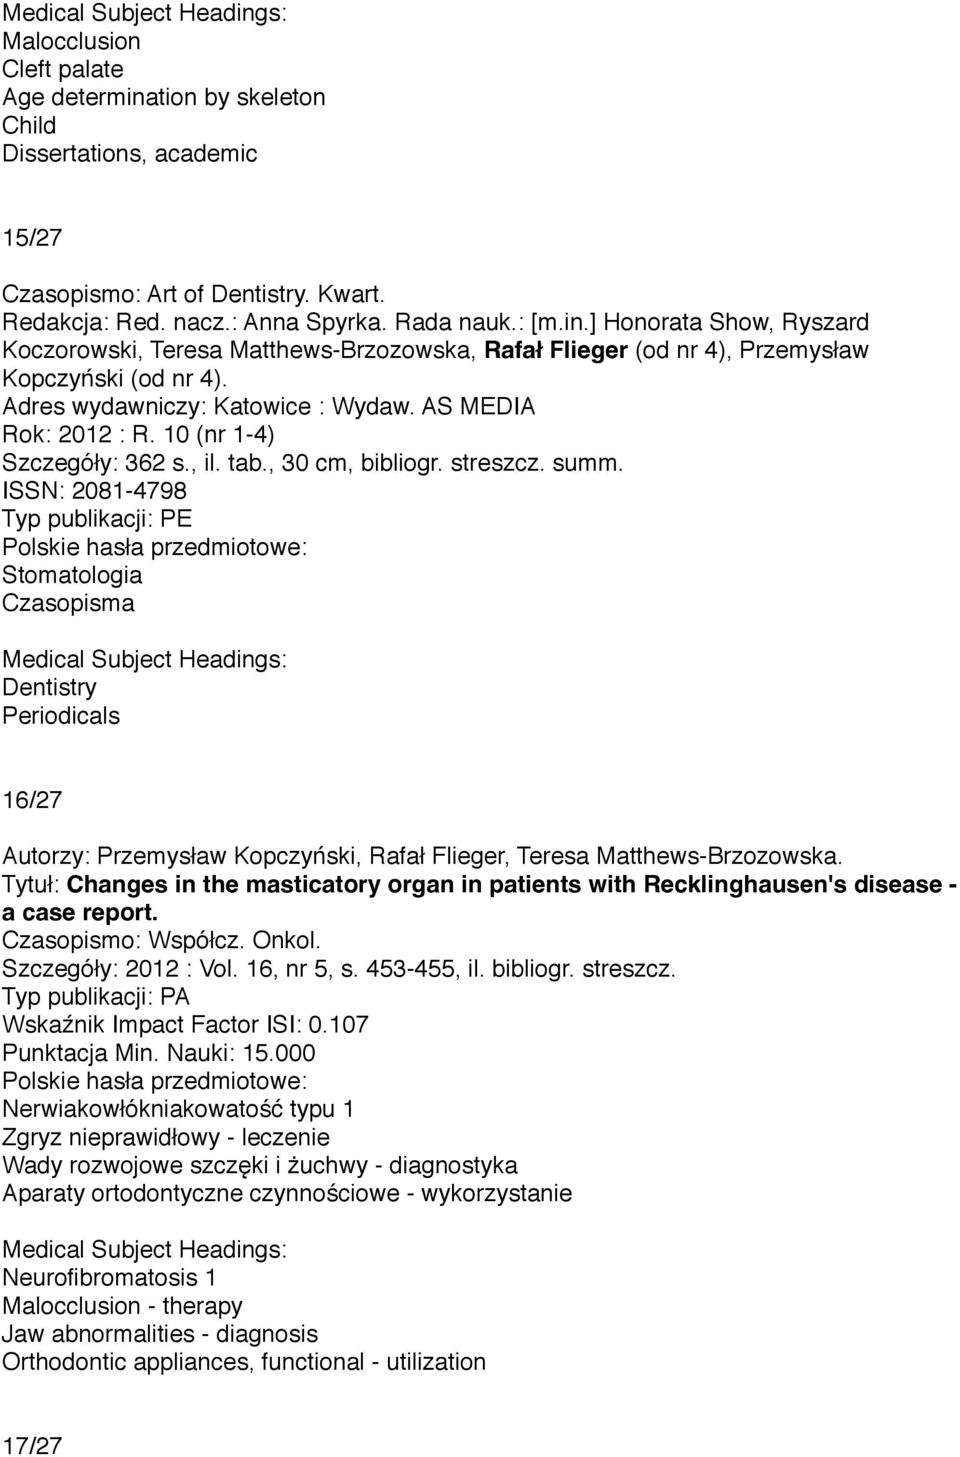 ISSN: 2081-4798 Typ publikacji: PE Stomatologia Czasopisma Dentistry Periodicals 16/27 Autorzy: Przemysław Kopczyński, Rafał Flieger, Teresa Matthews-Brzozowska.